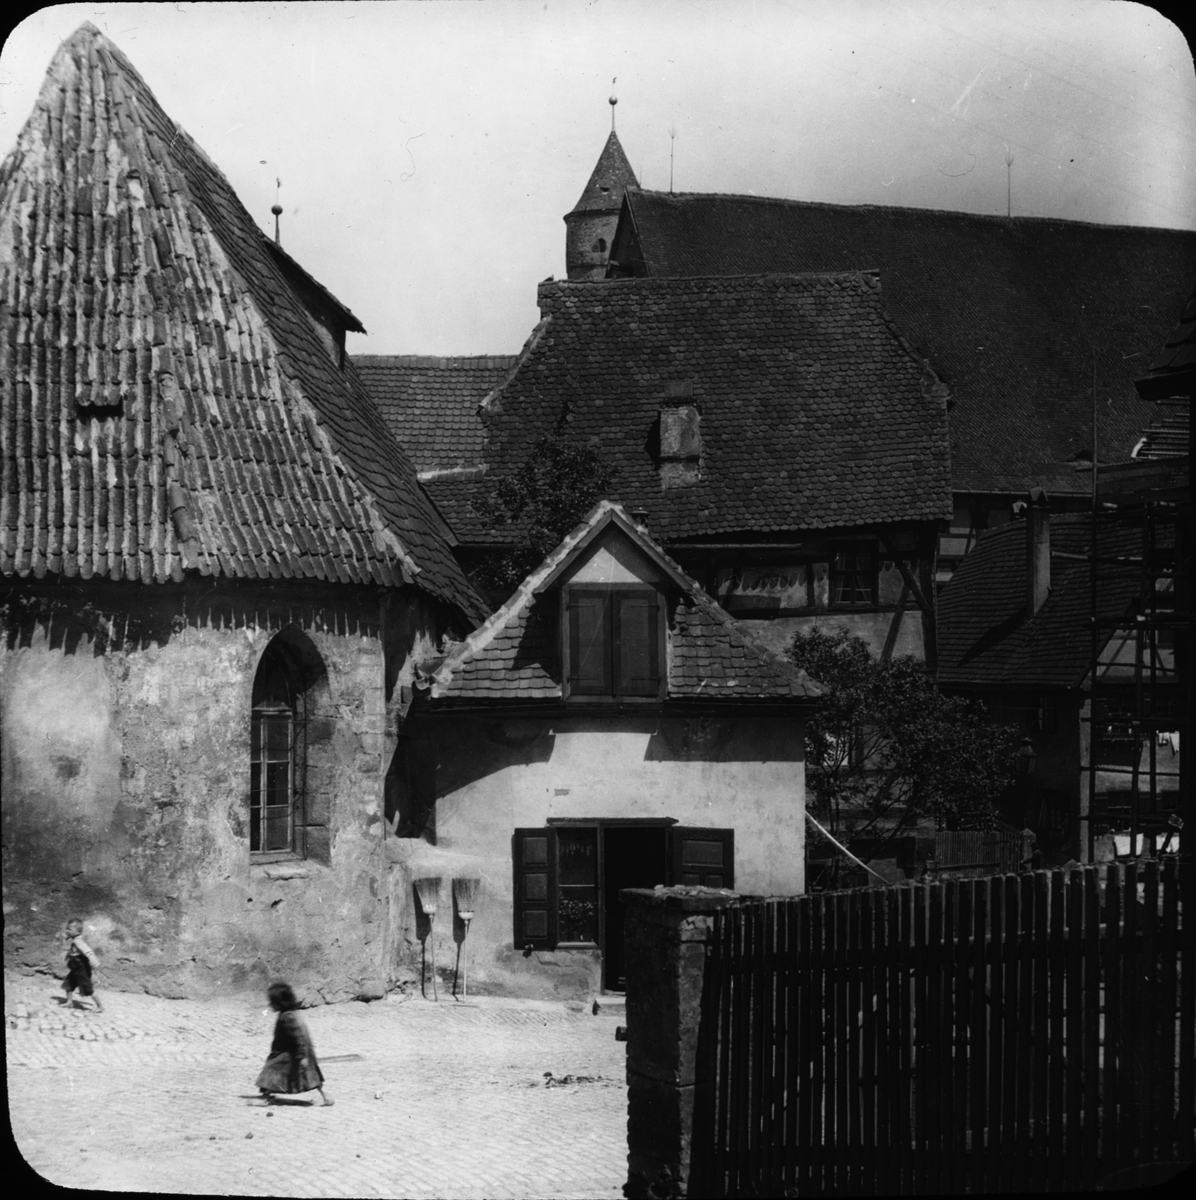 Skioptikonbild med motiv av Drei Königs Kapelle i Dinkelsbühl.
Bilden har förvarats i kartong märkt: Resan 1911. Dinkelsbühl 10.V. Text på bild: "Drei Könige kapelle".